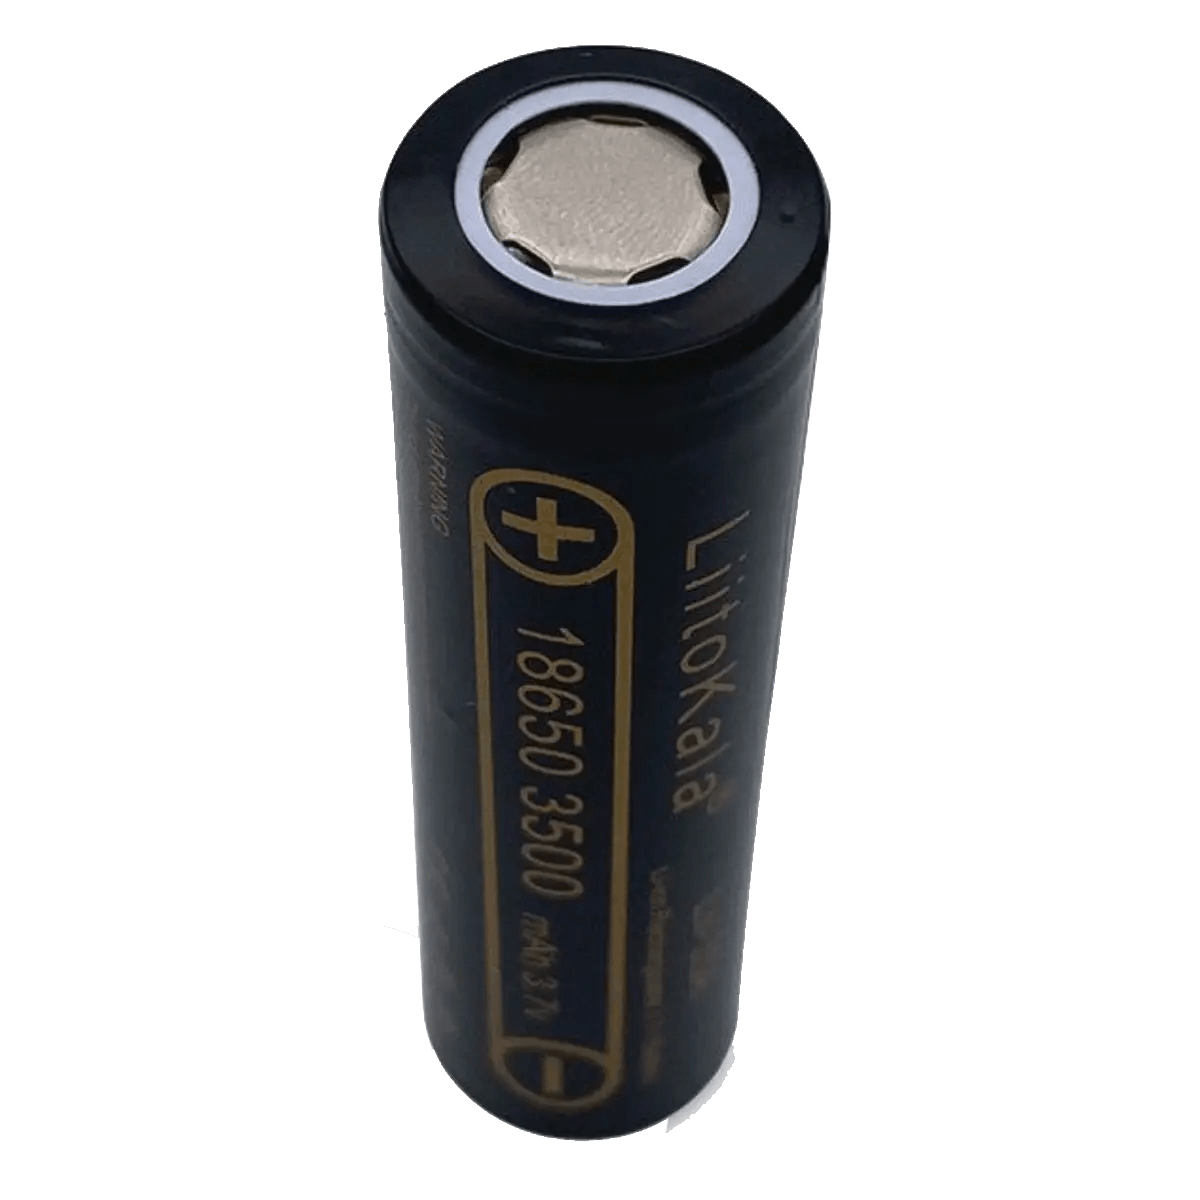 Batterie rechargeable 18650 Lii-35A 3.7v 3500mAh pour Cigarette